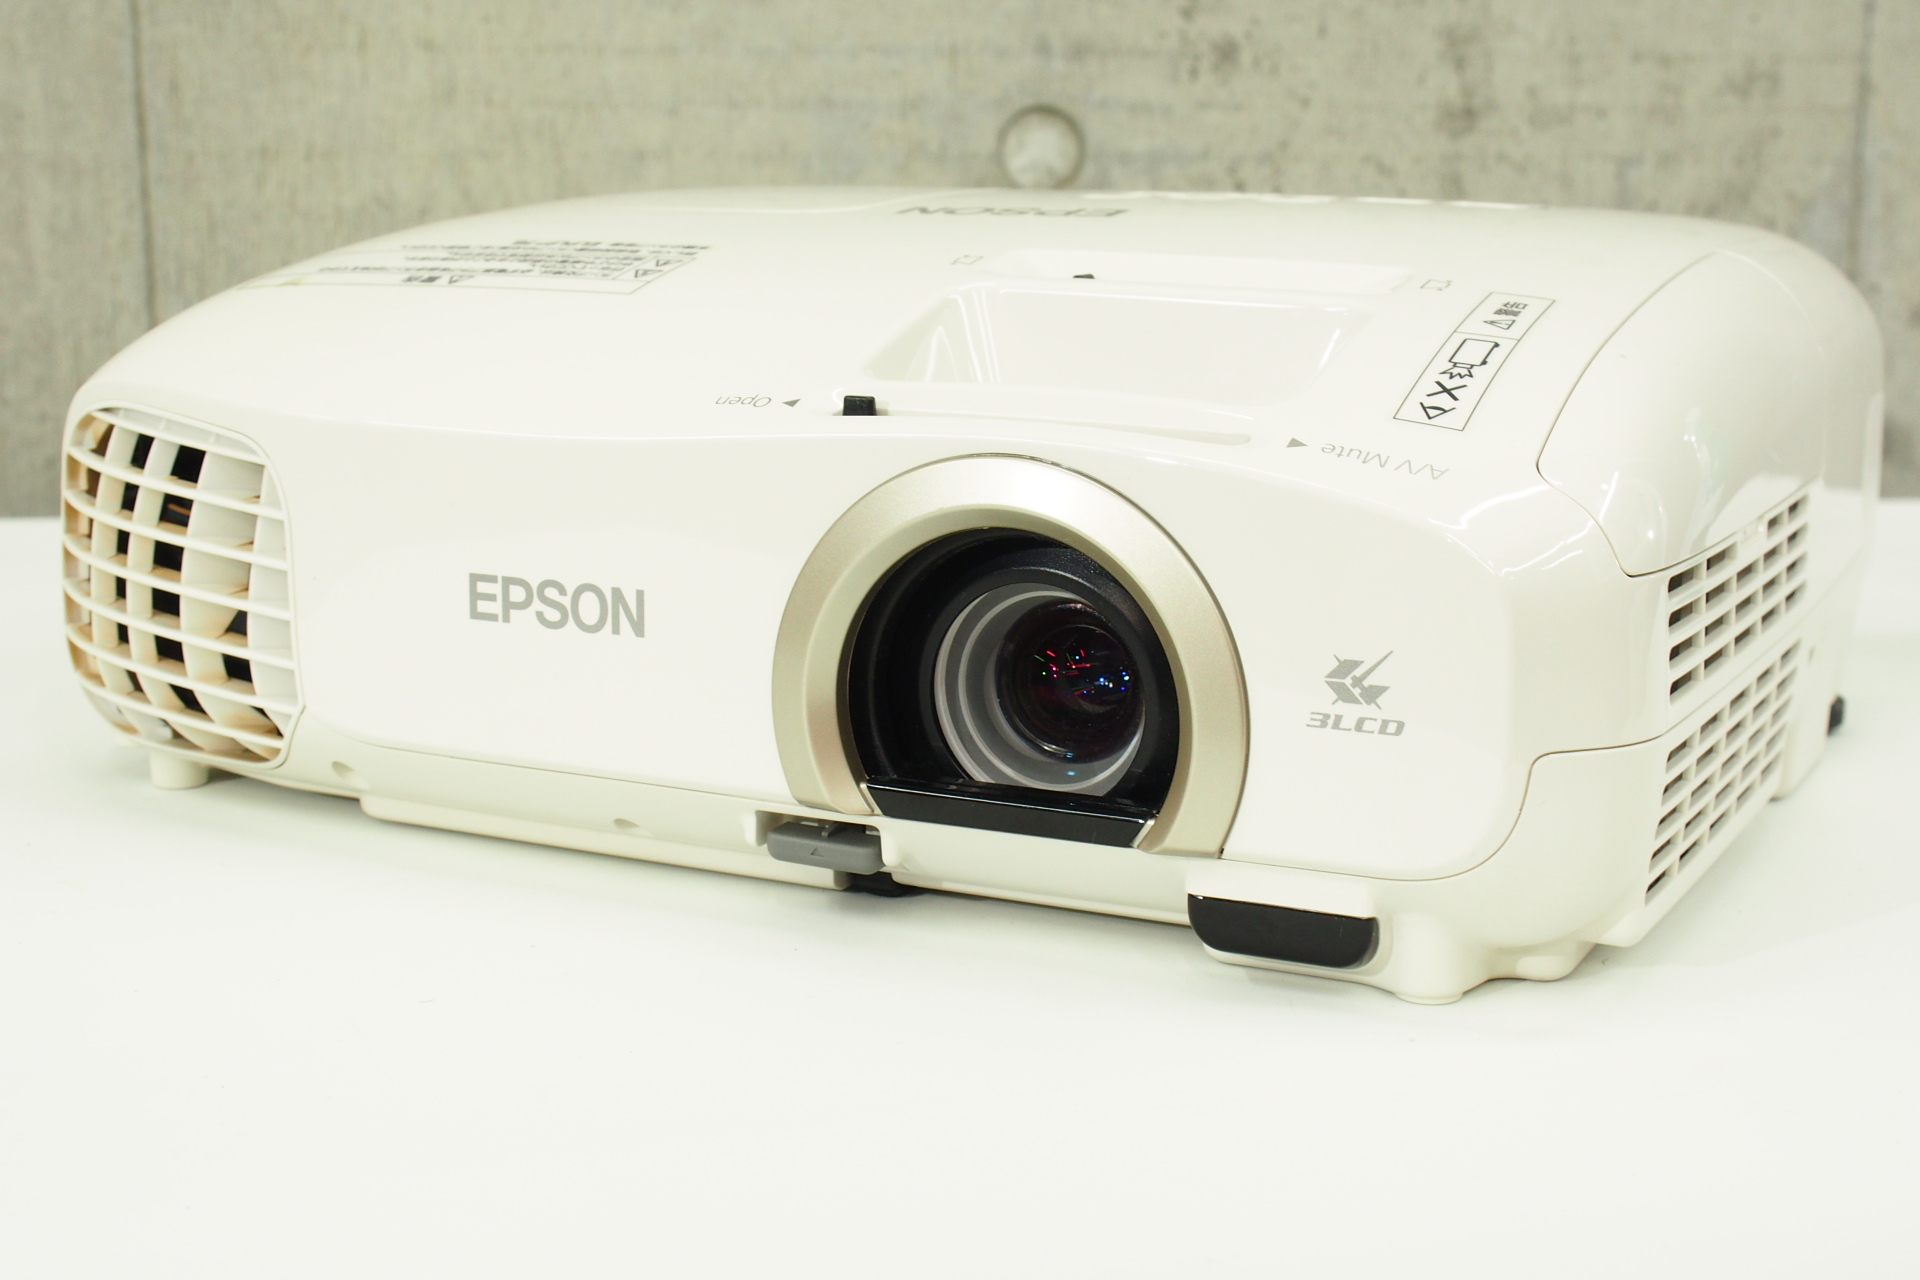 EPSON EH-TW5350 & HDMIケーブル付 - プロジェクター